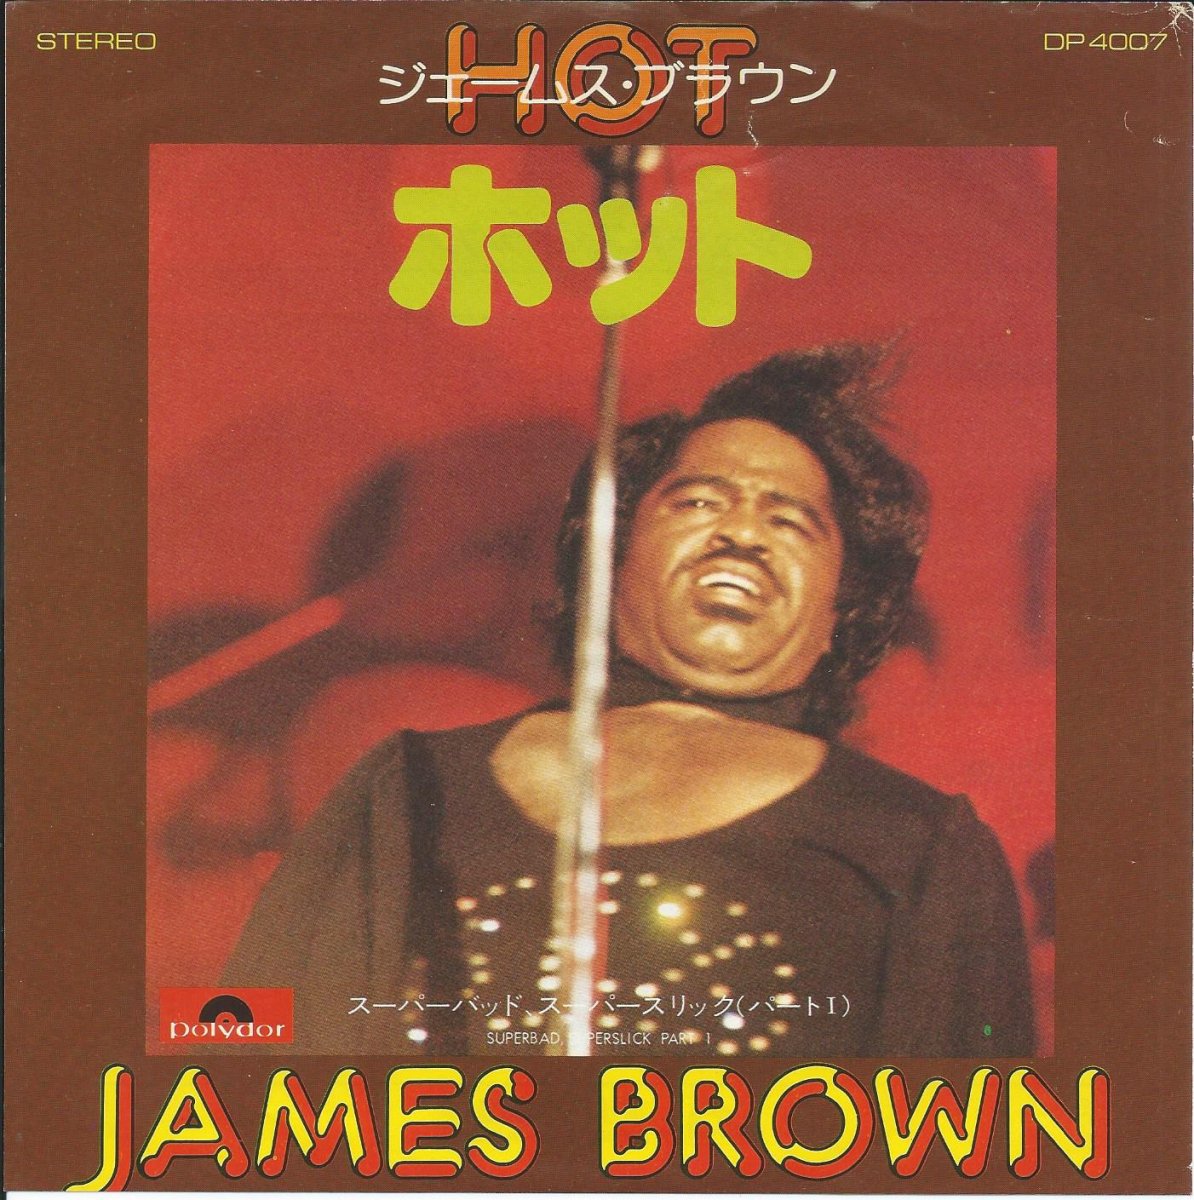 ジェームス・ブラウン JAMES BROWN / ホット HOT (I NEED TO BE LOVED, LOVED, LOVED, LOVED) (7